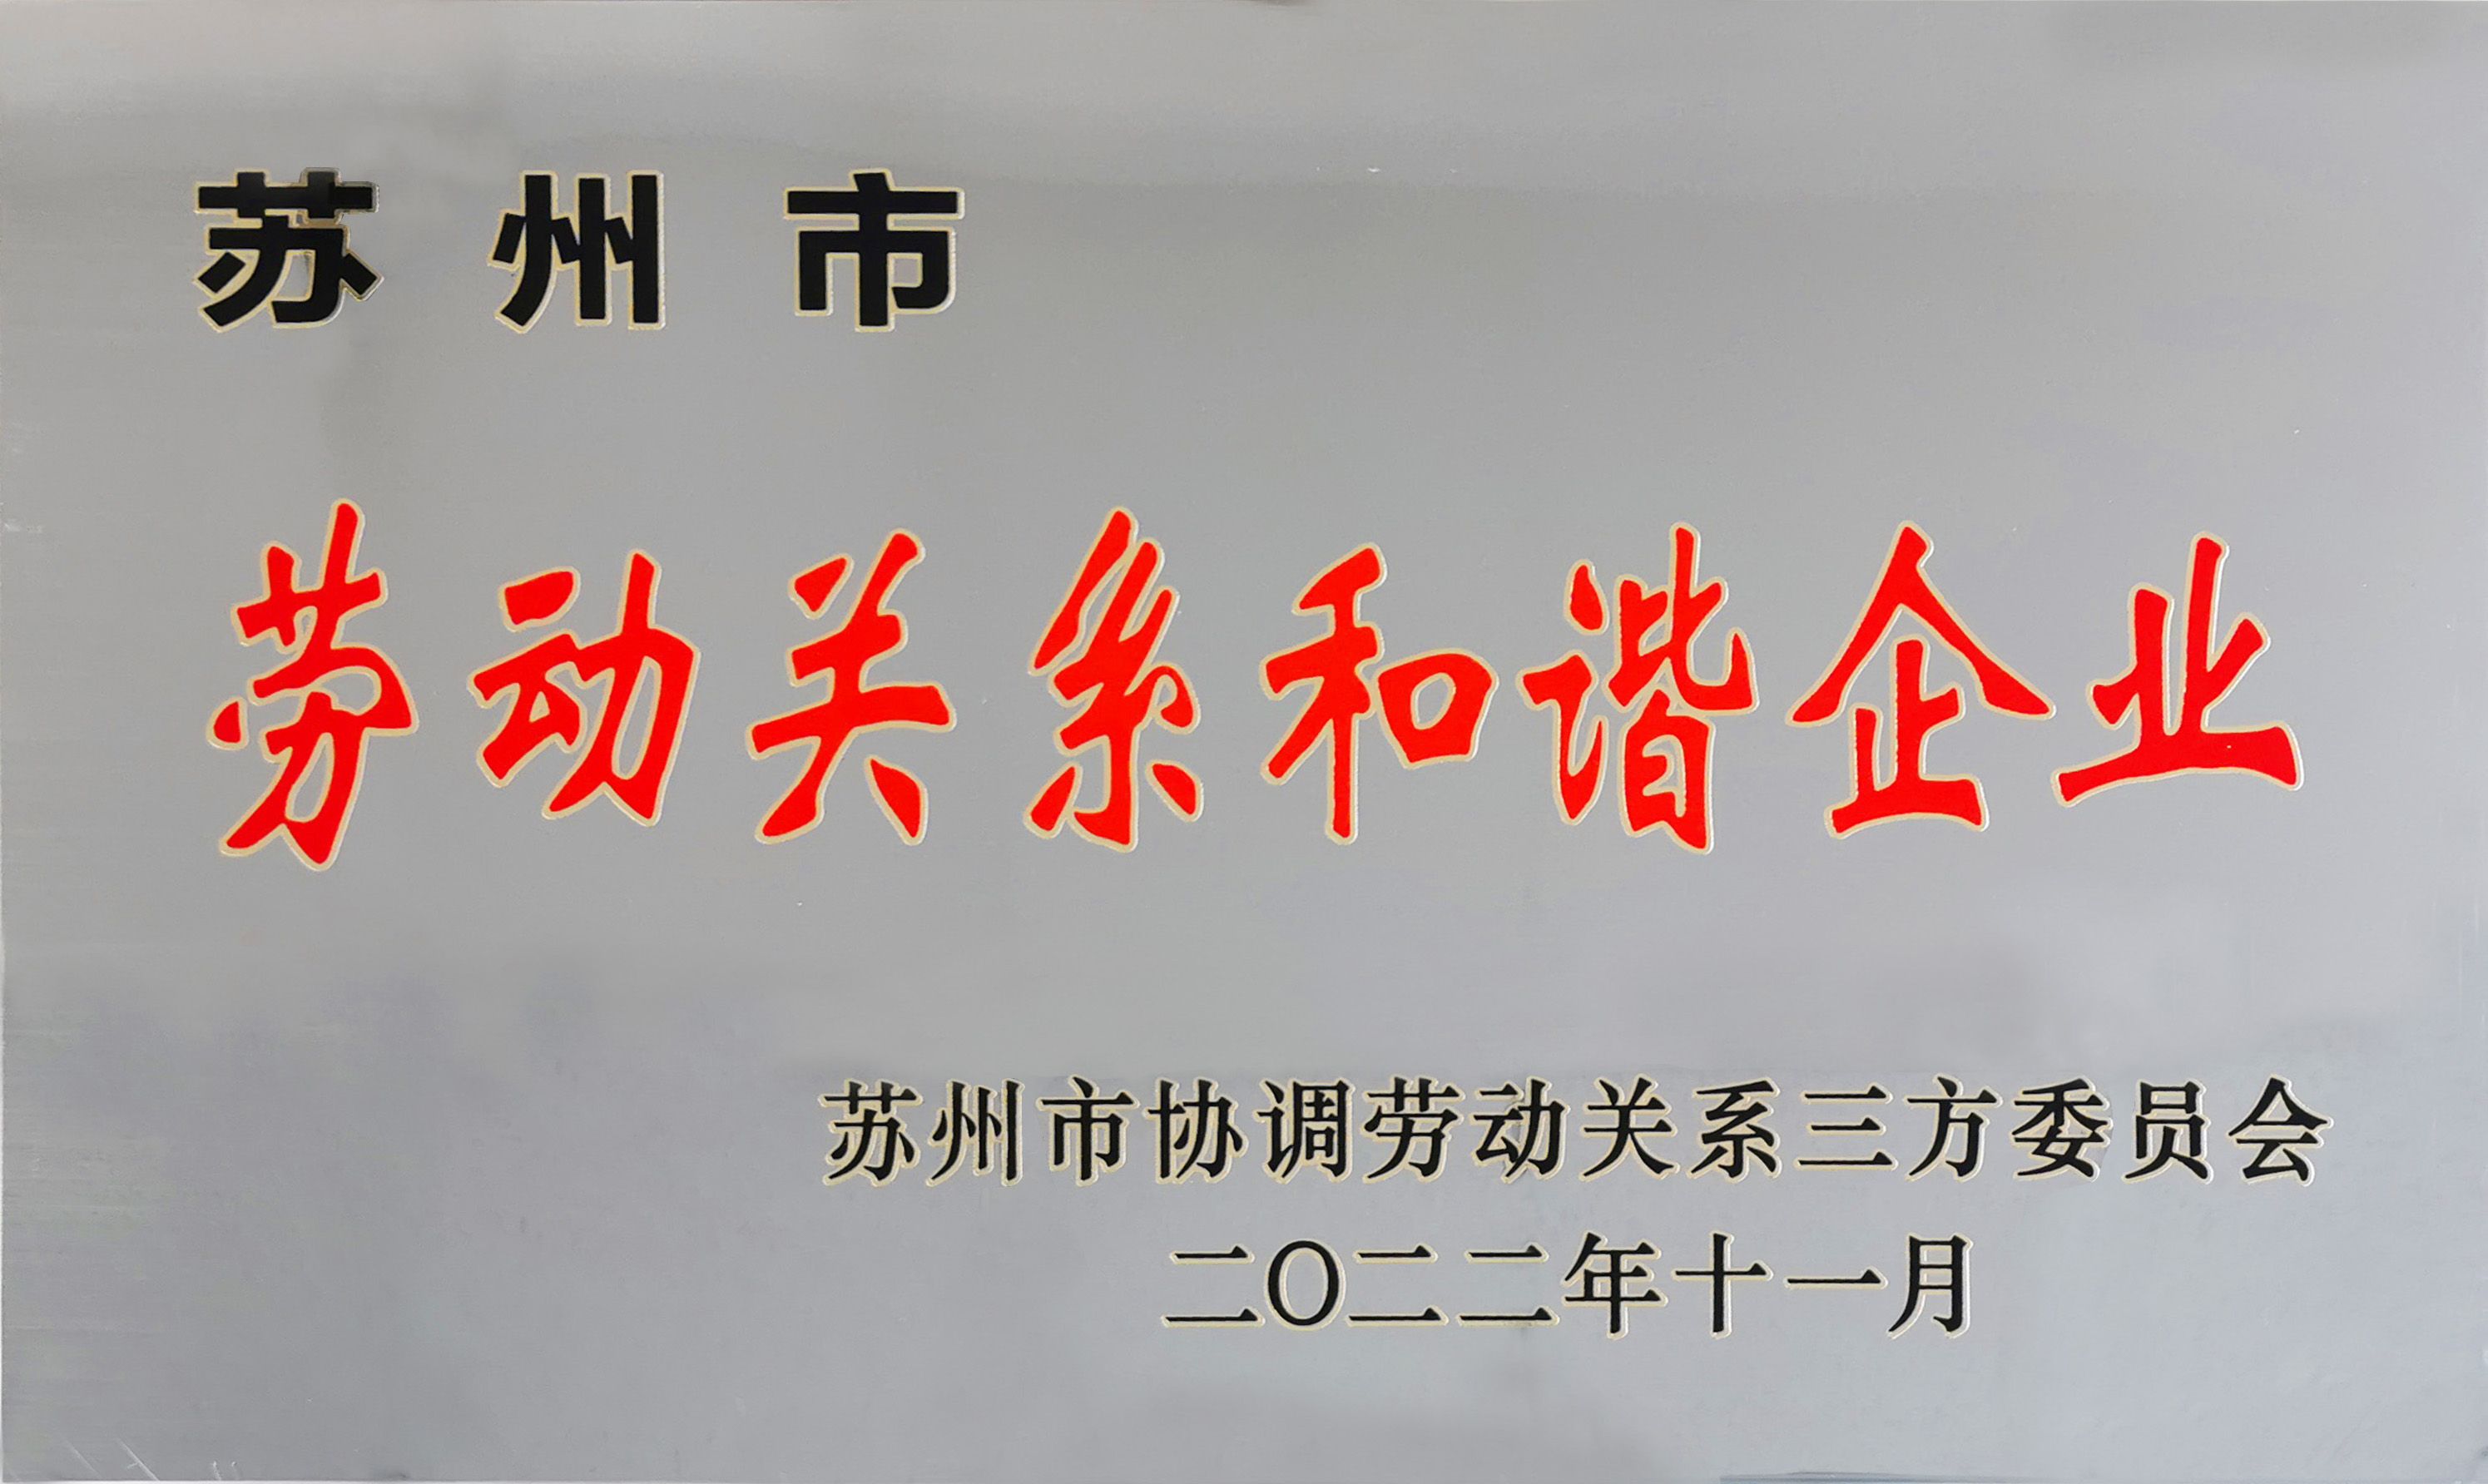 喜報|通錦精密獲評“蘇州市勞動關系和諧企業”稱號